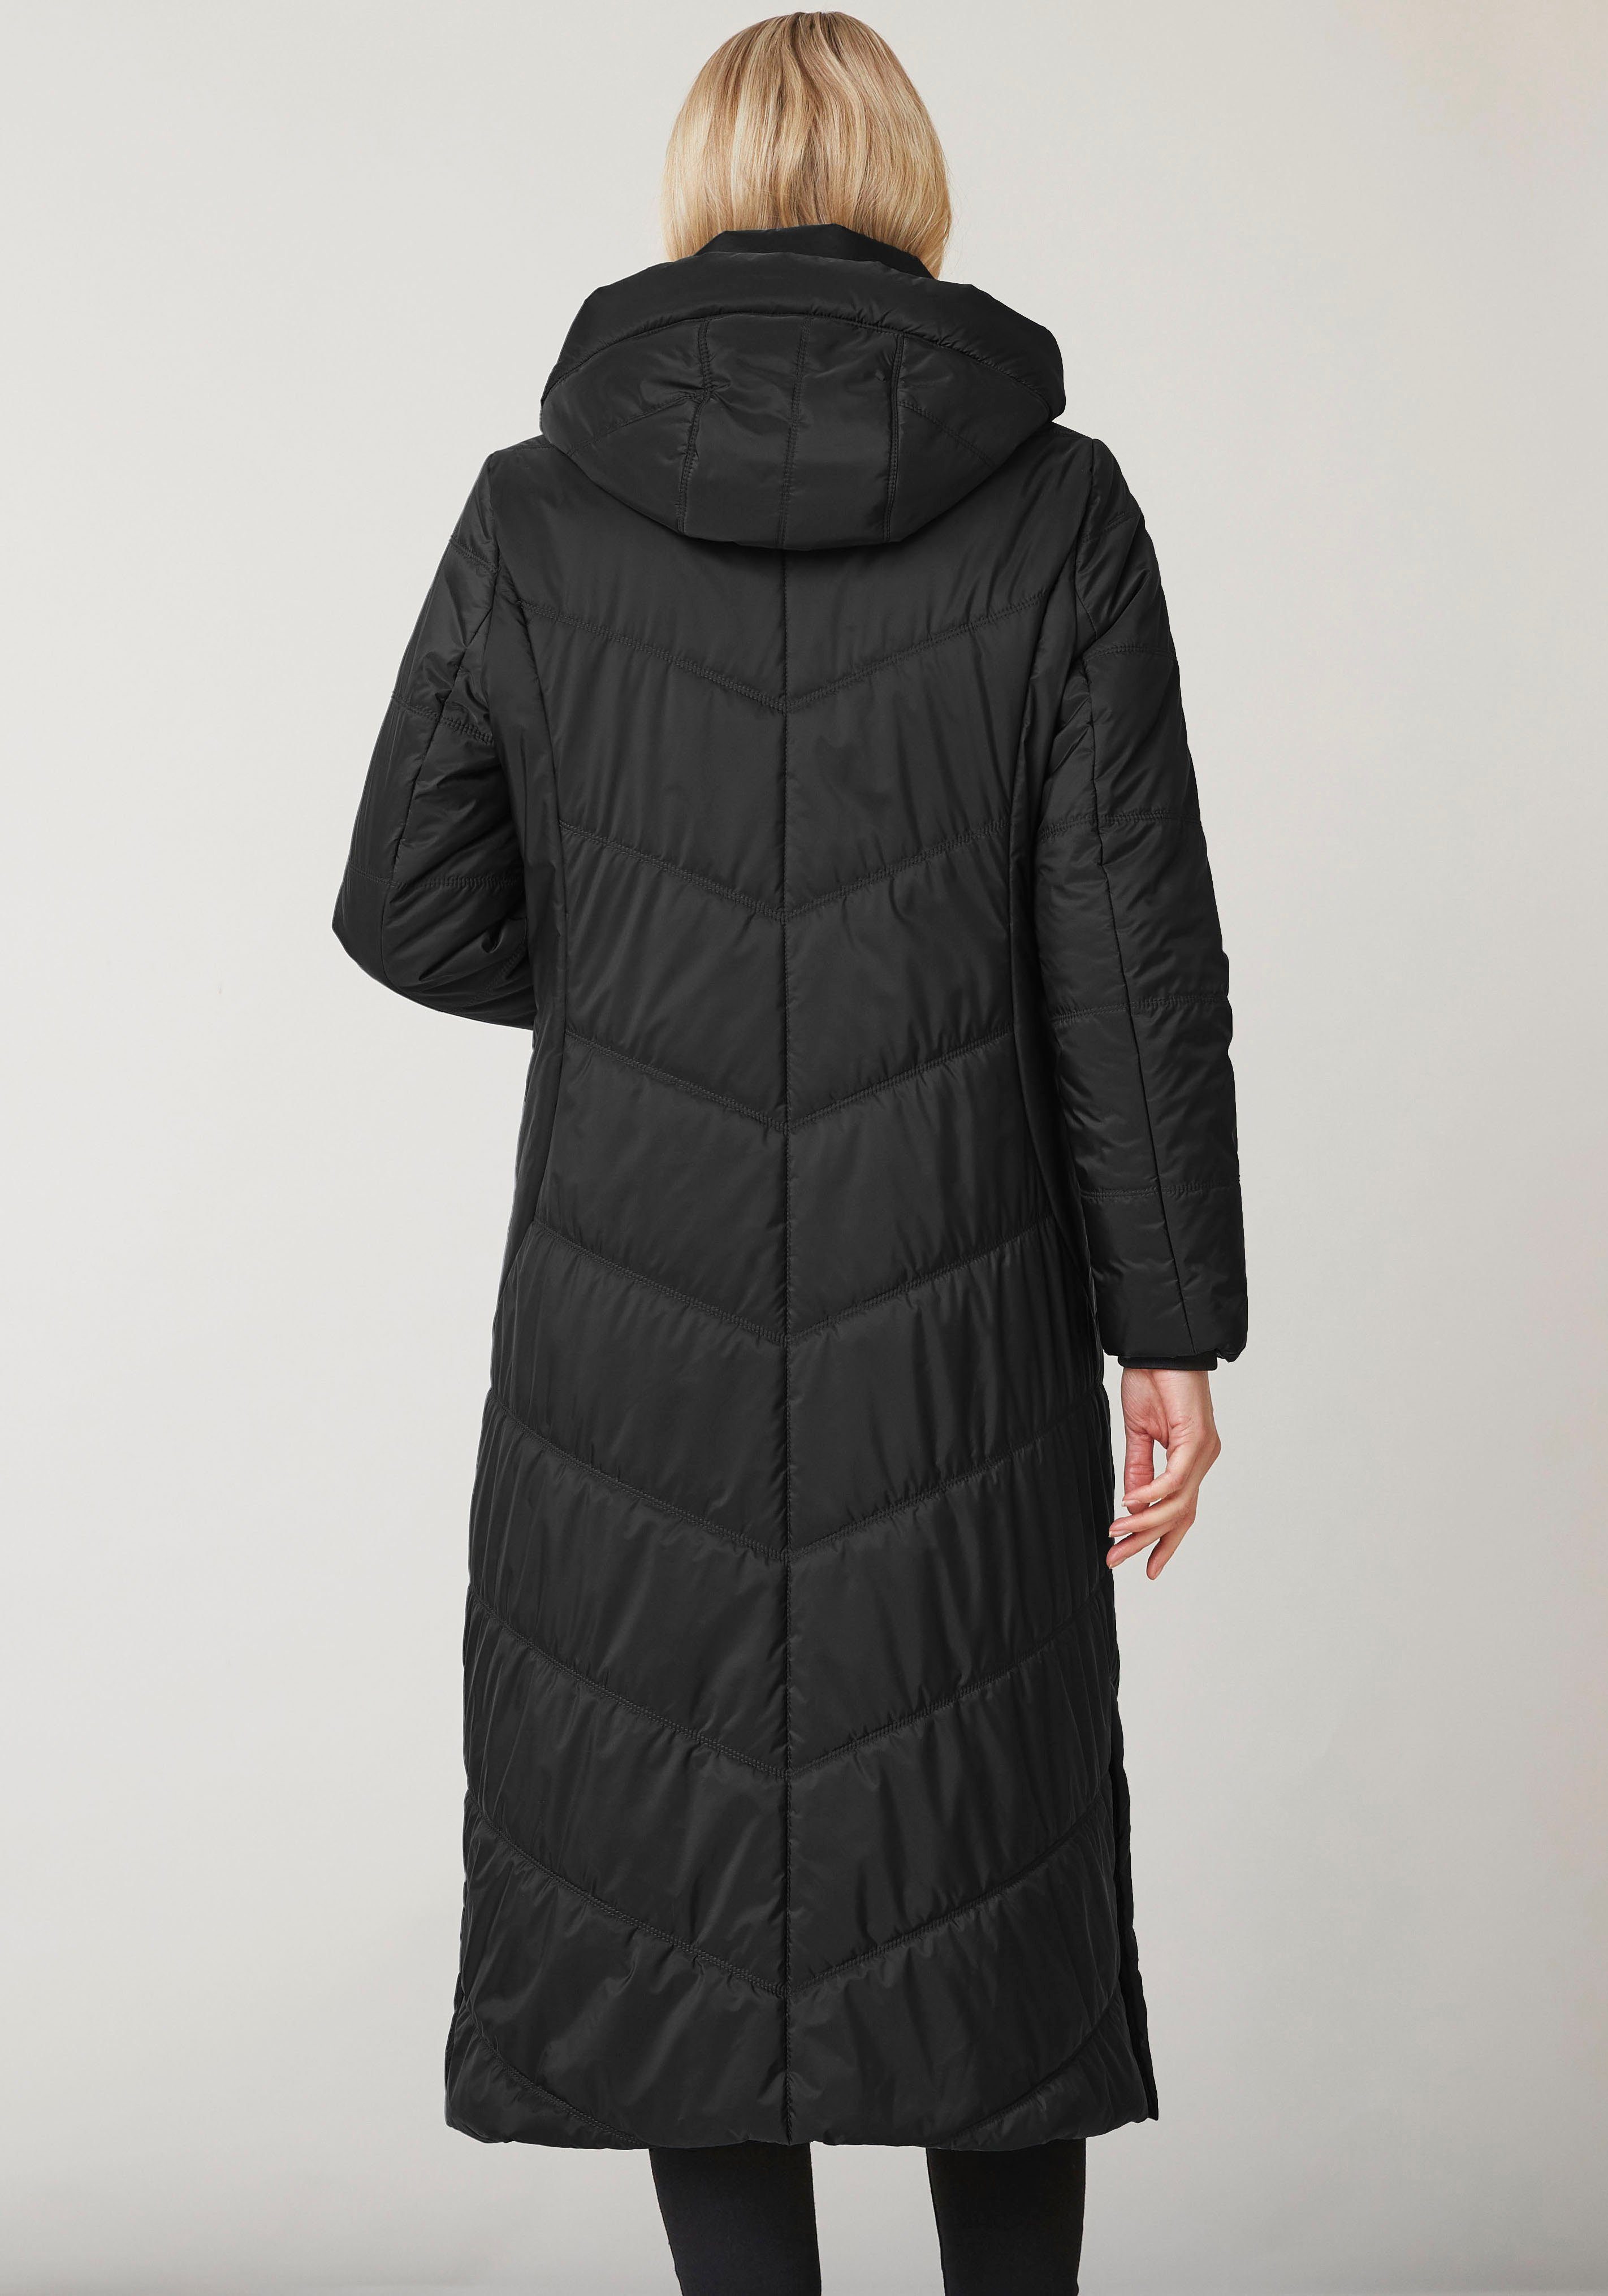 Ina black Winterjacke Junge Danmark seitlichen Reißverschlusstaschen mit